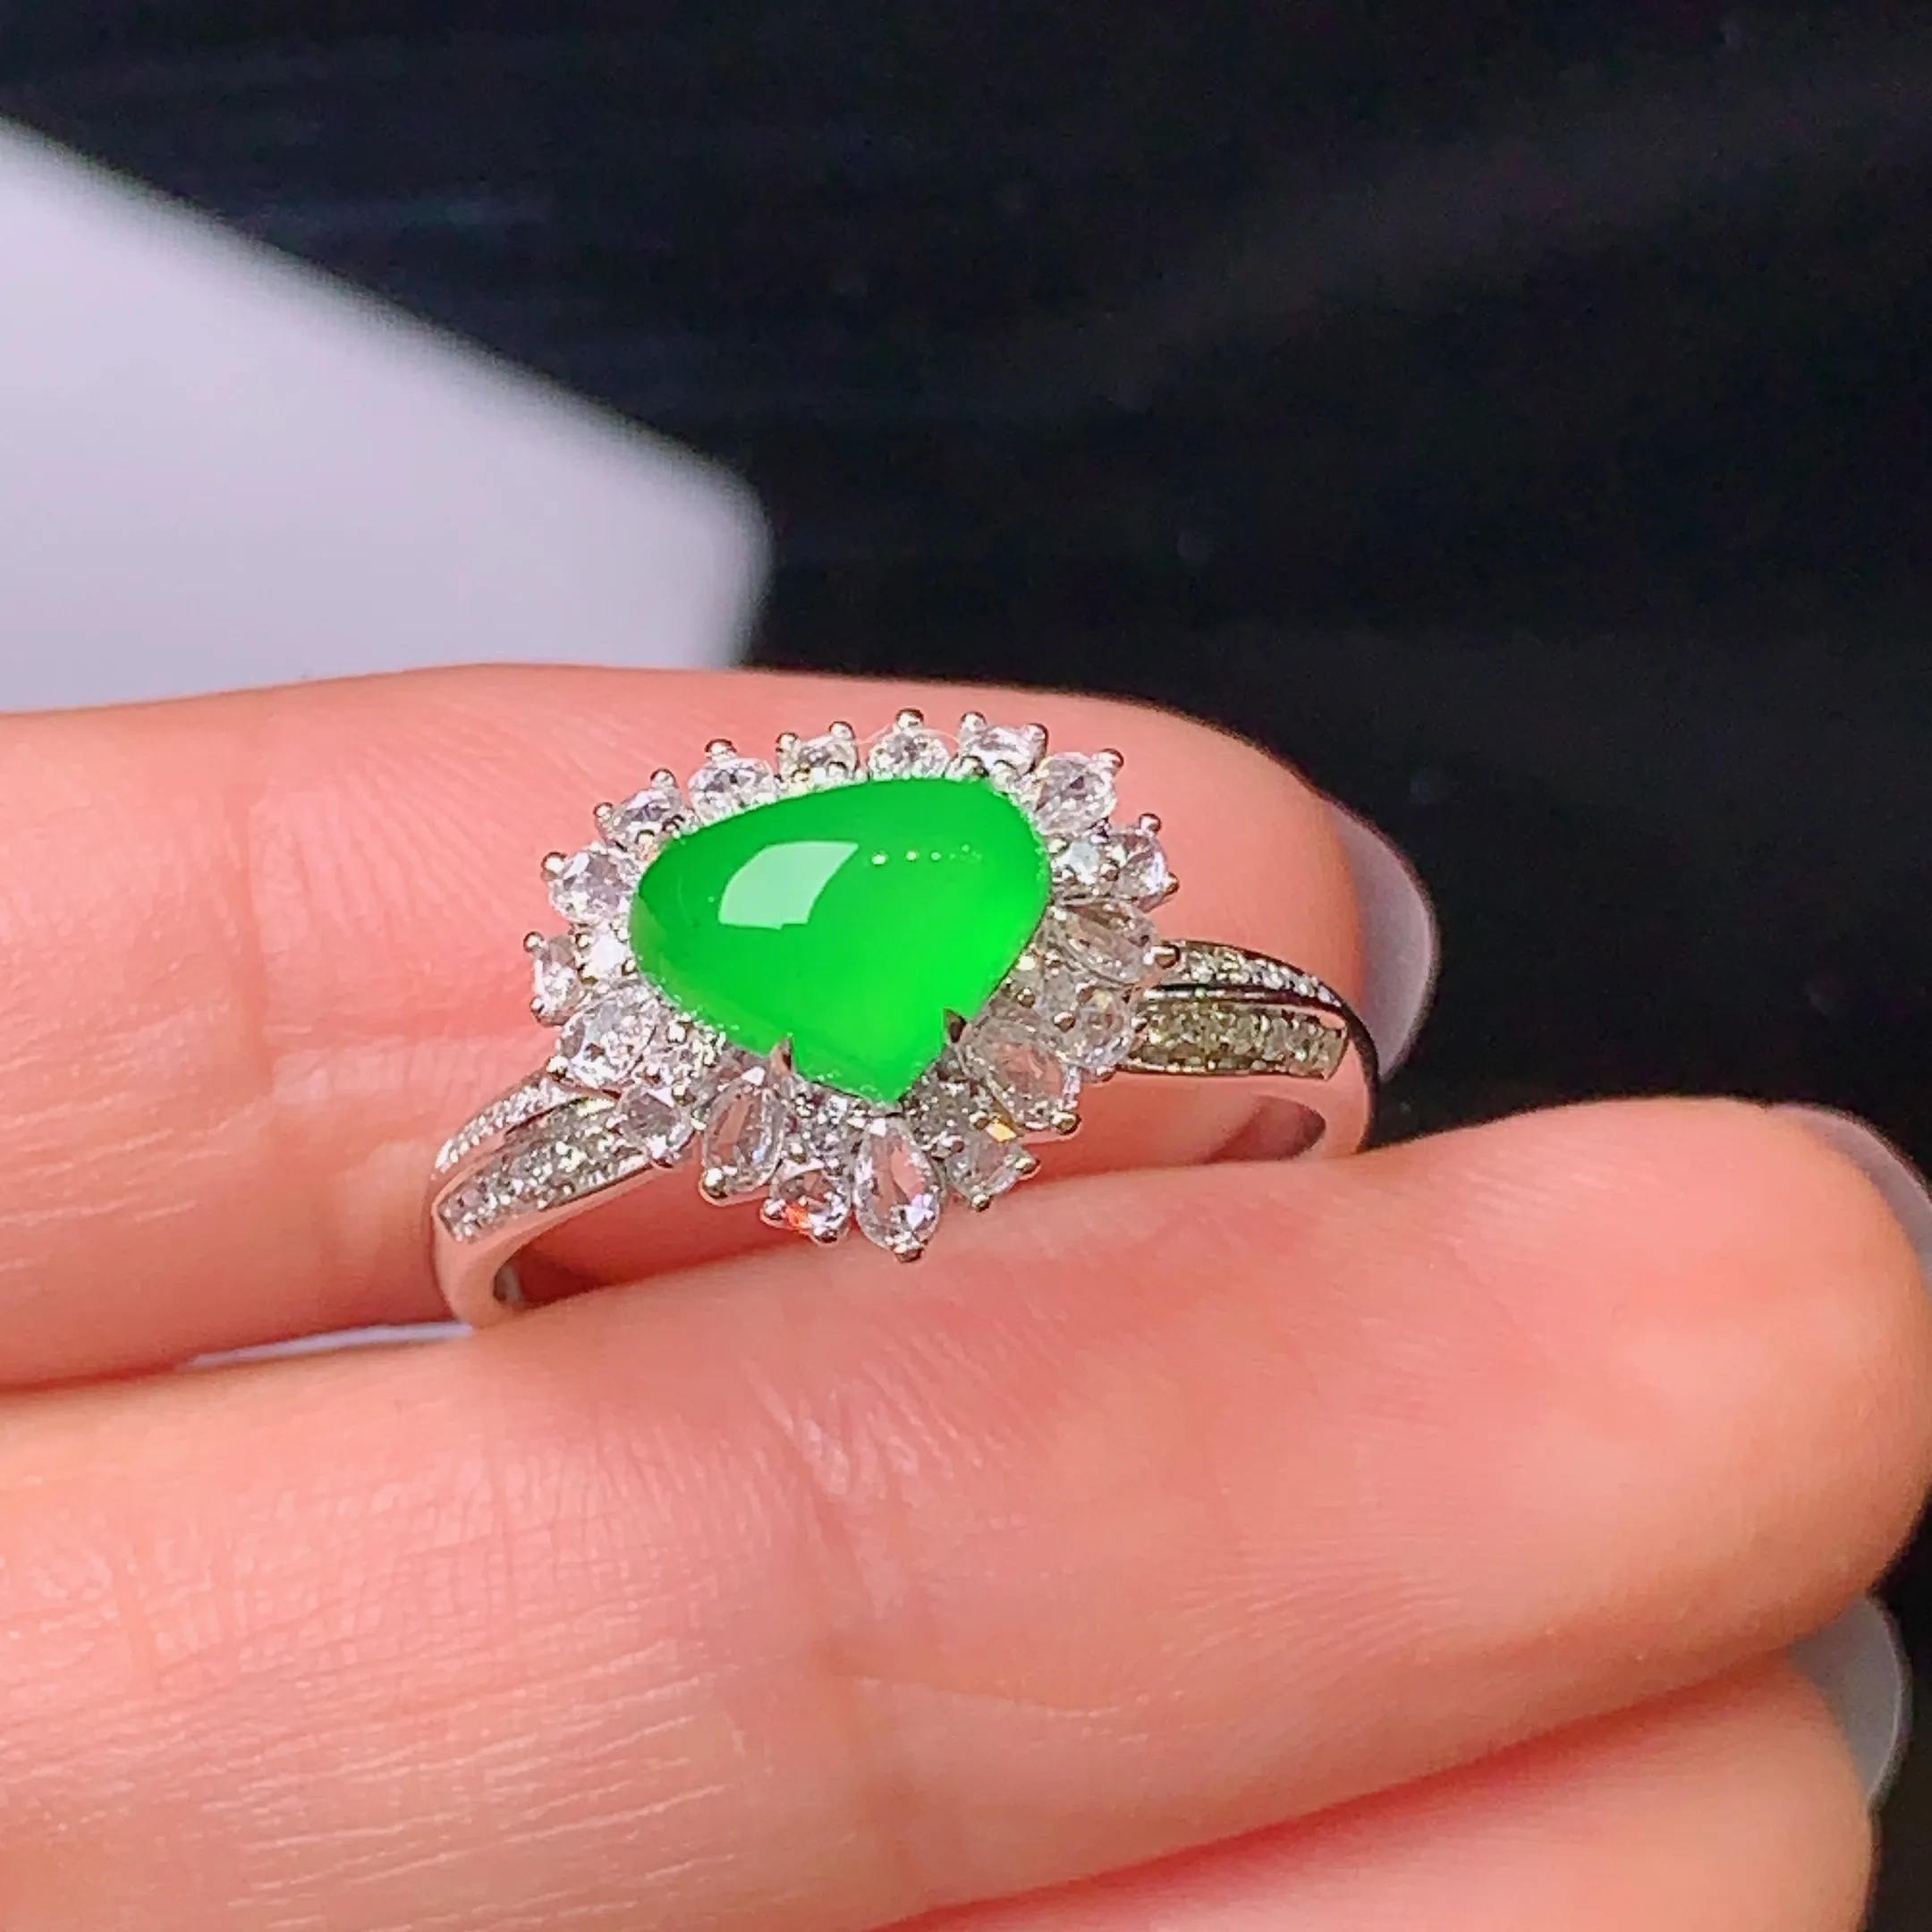 18k金钻镶嵌满绿心形戒指 玉质细腻 色泽清新艳丽 圈口14.5 整体尺寸10.8*12.3*9.8